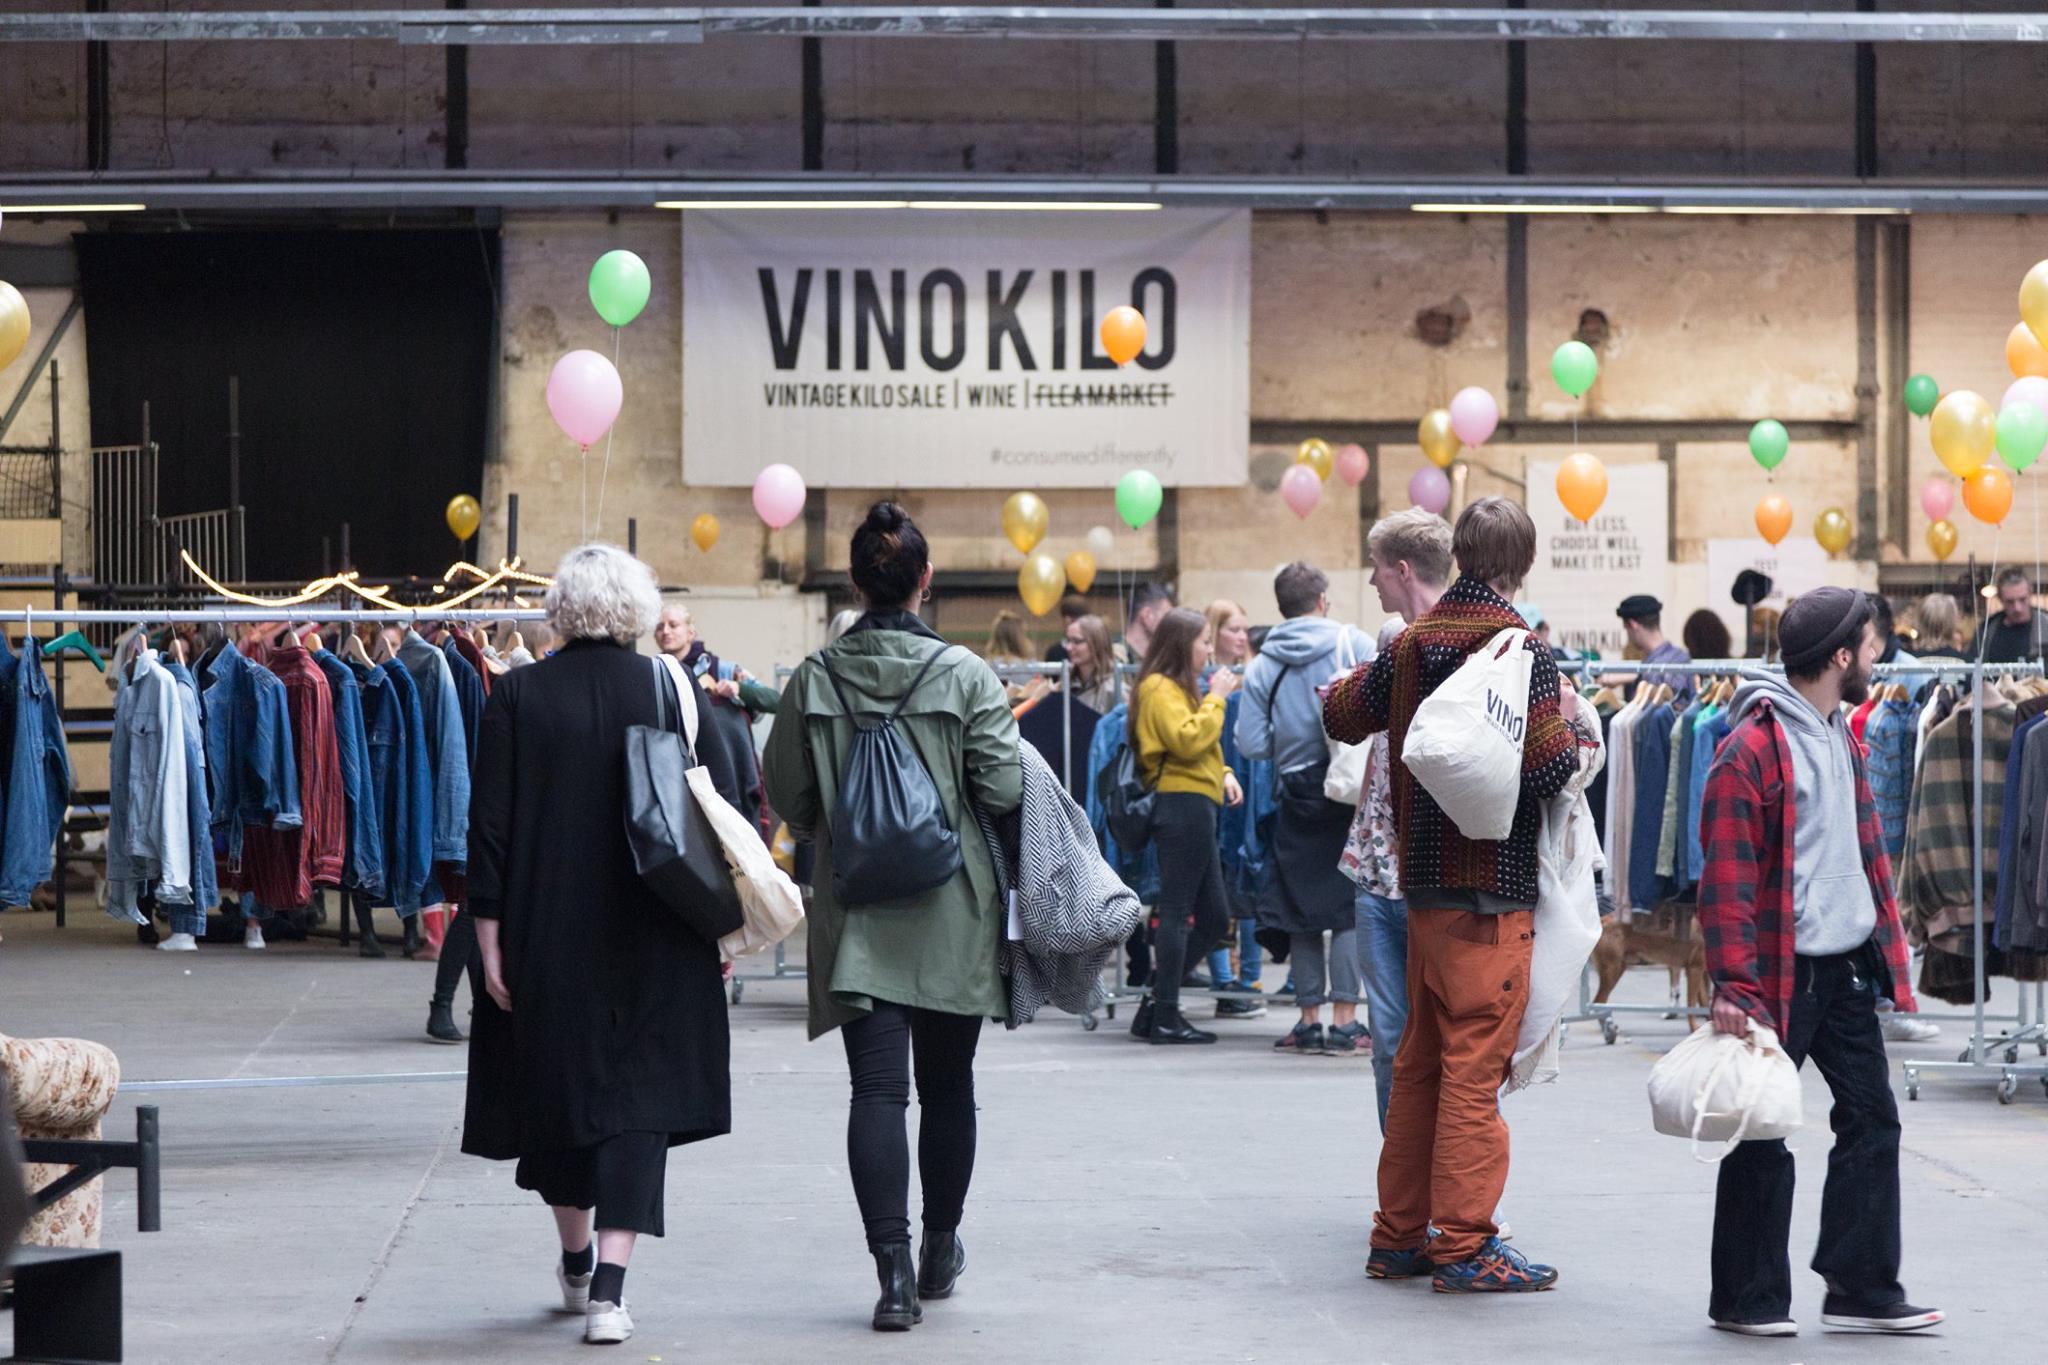 Un mercado de ropa vintage de Vinokilo en una imagen reciente.